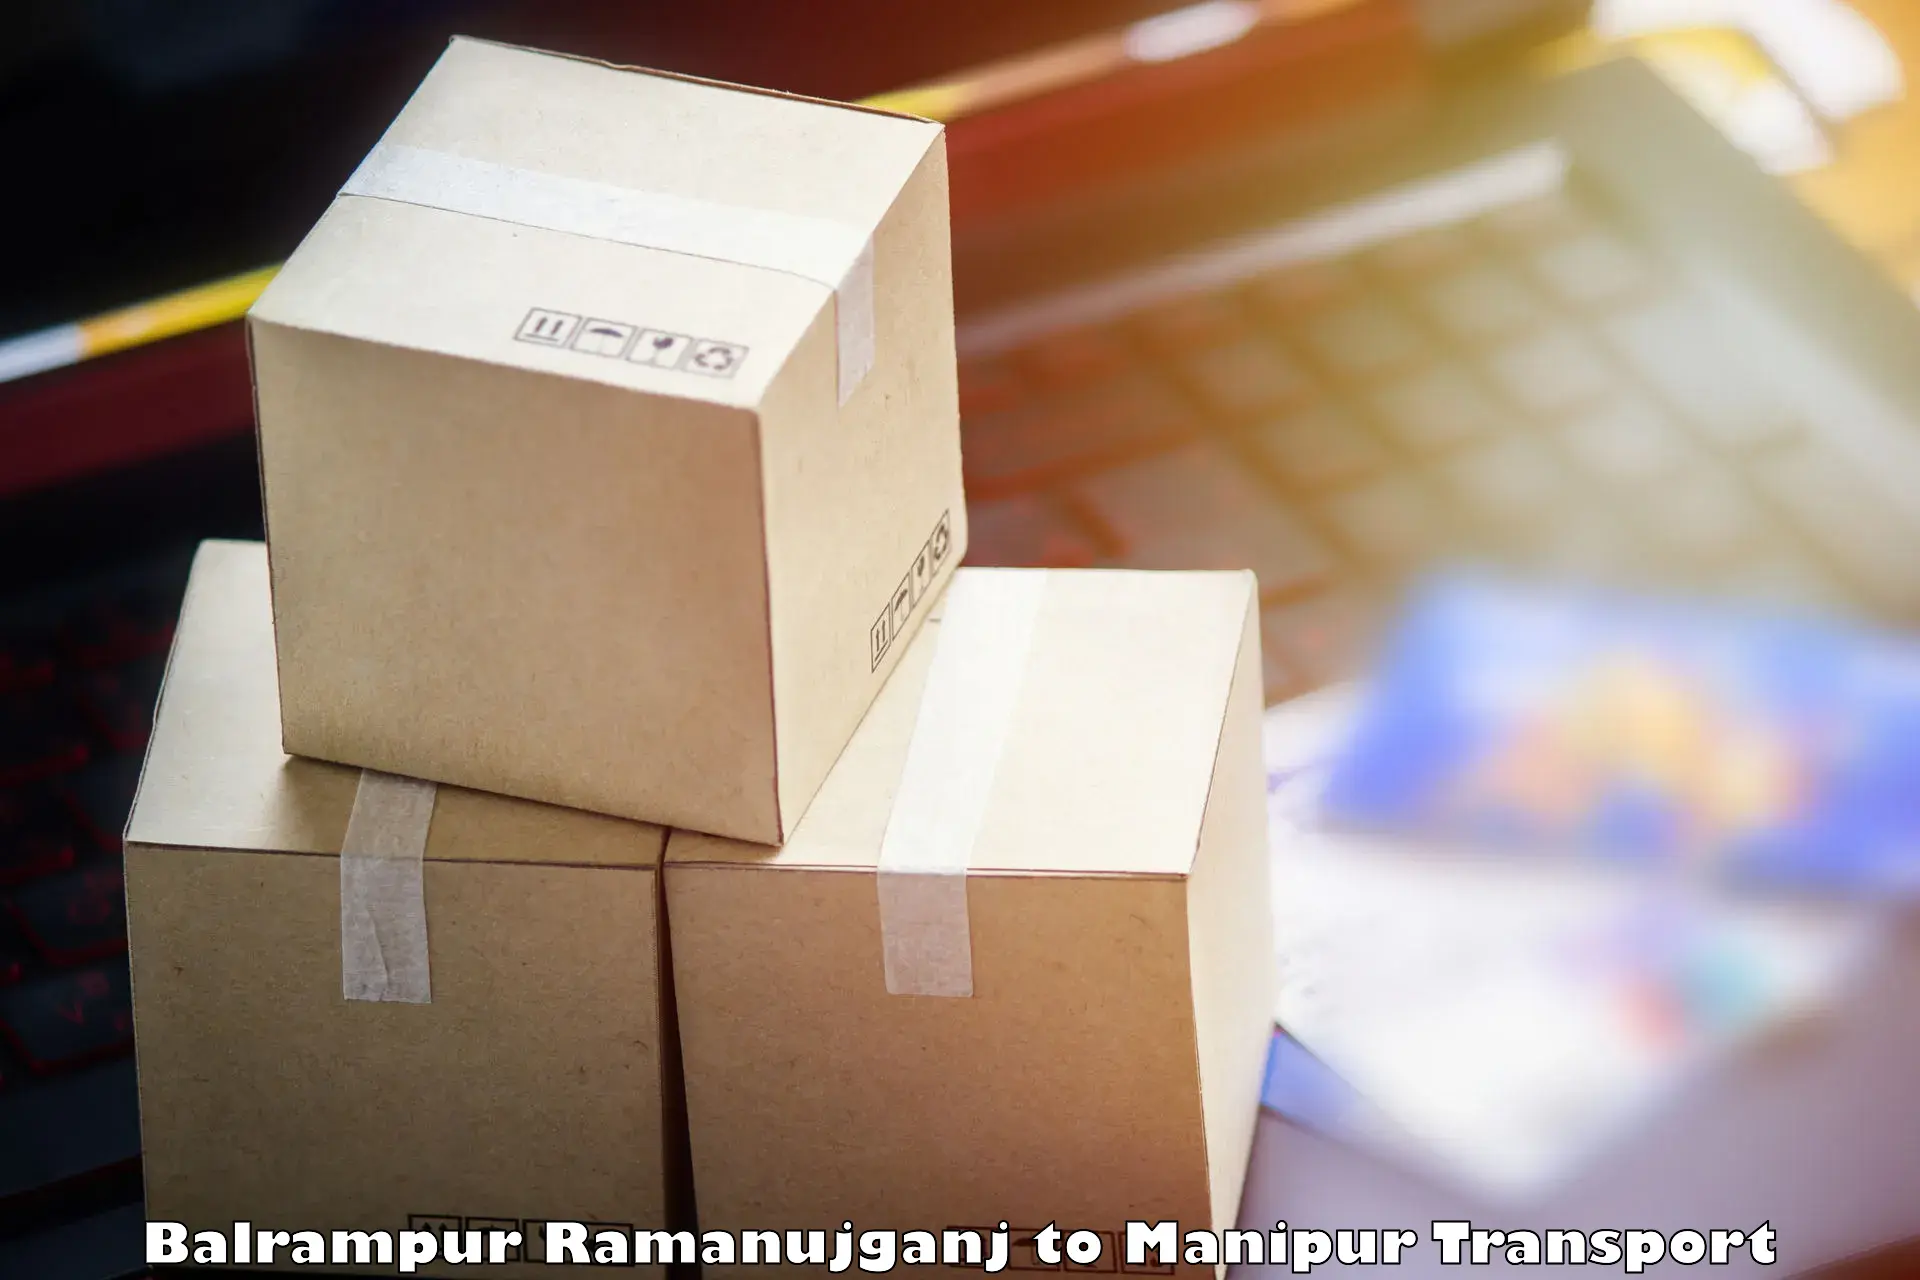 Road transport services Balrampur Ramanujganj to Manipur